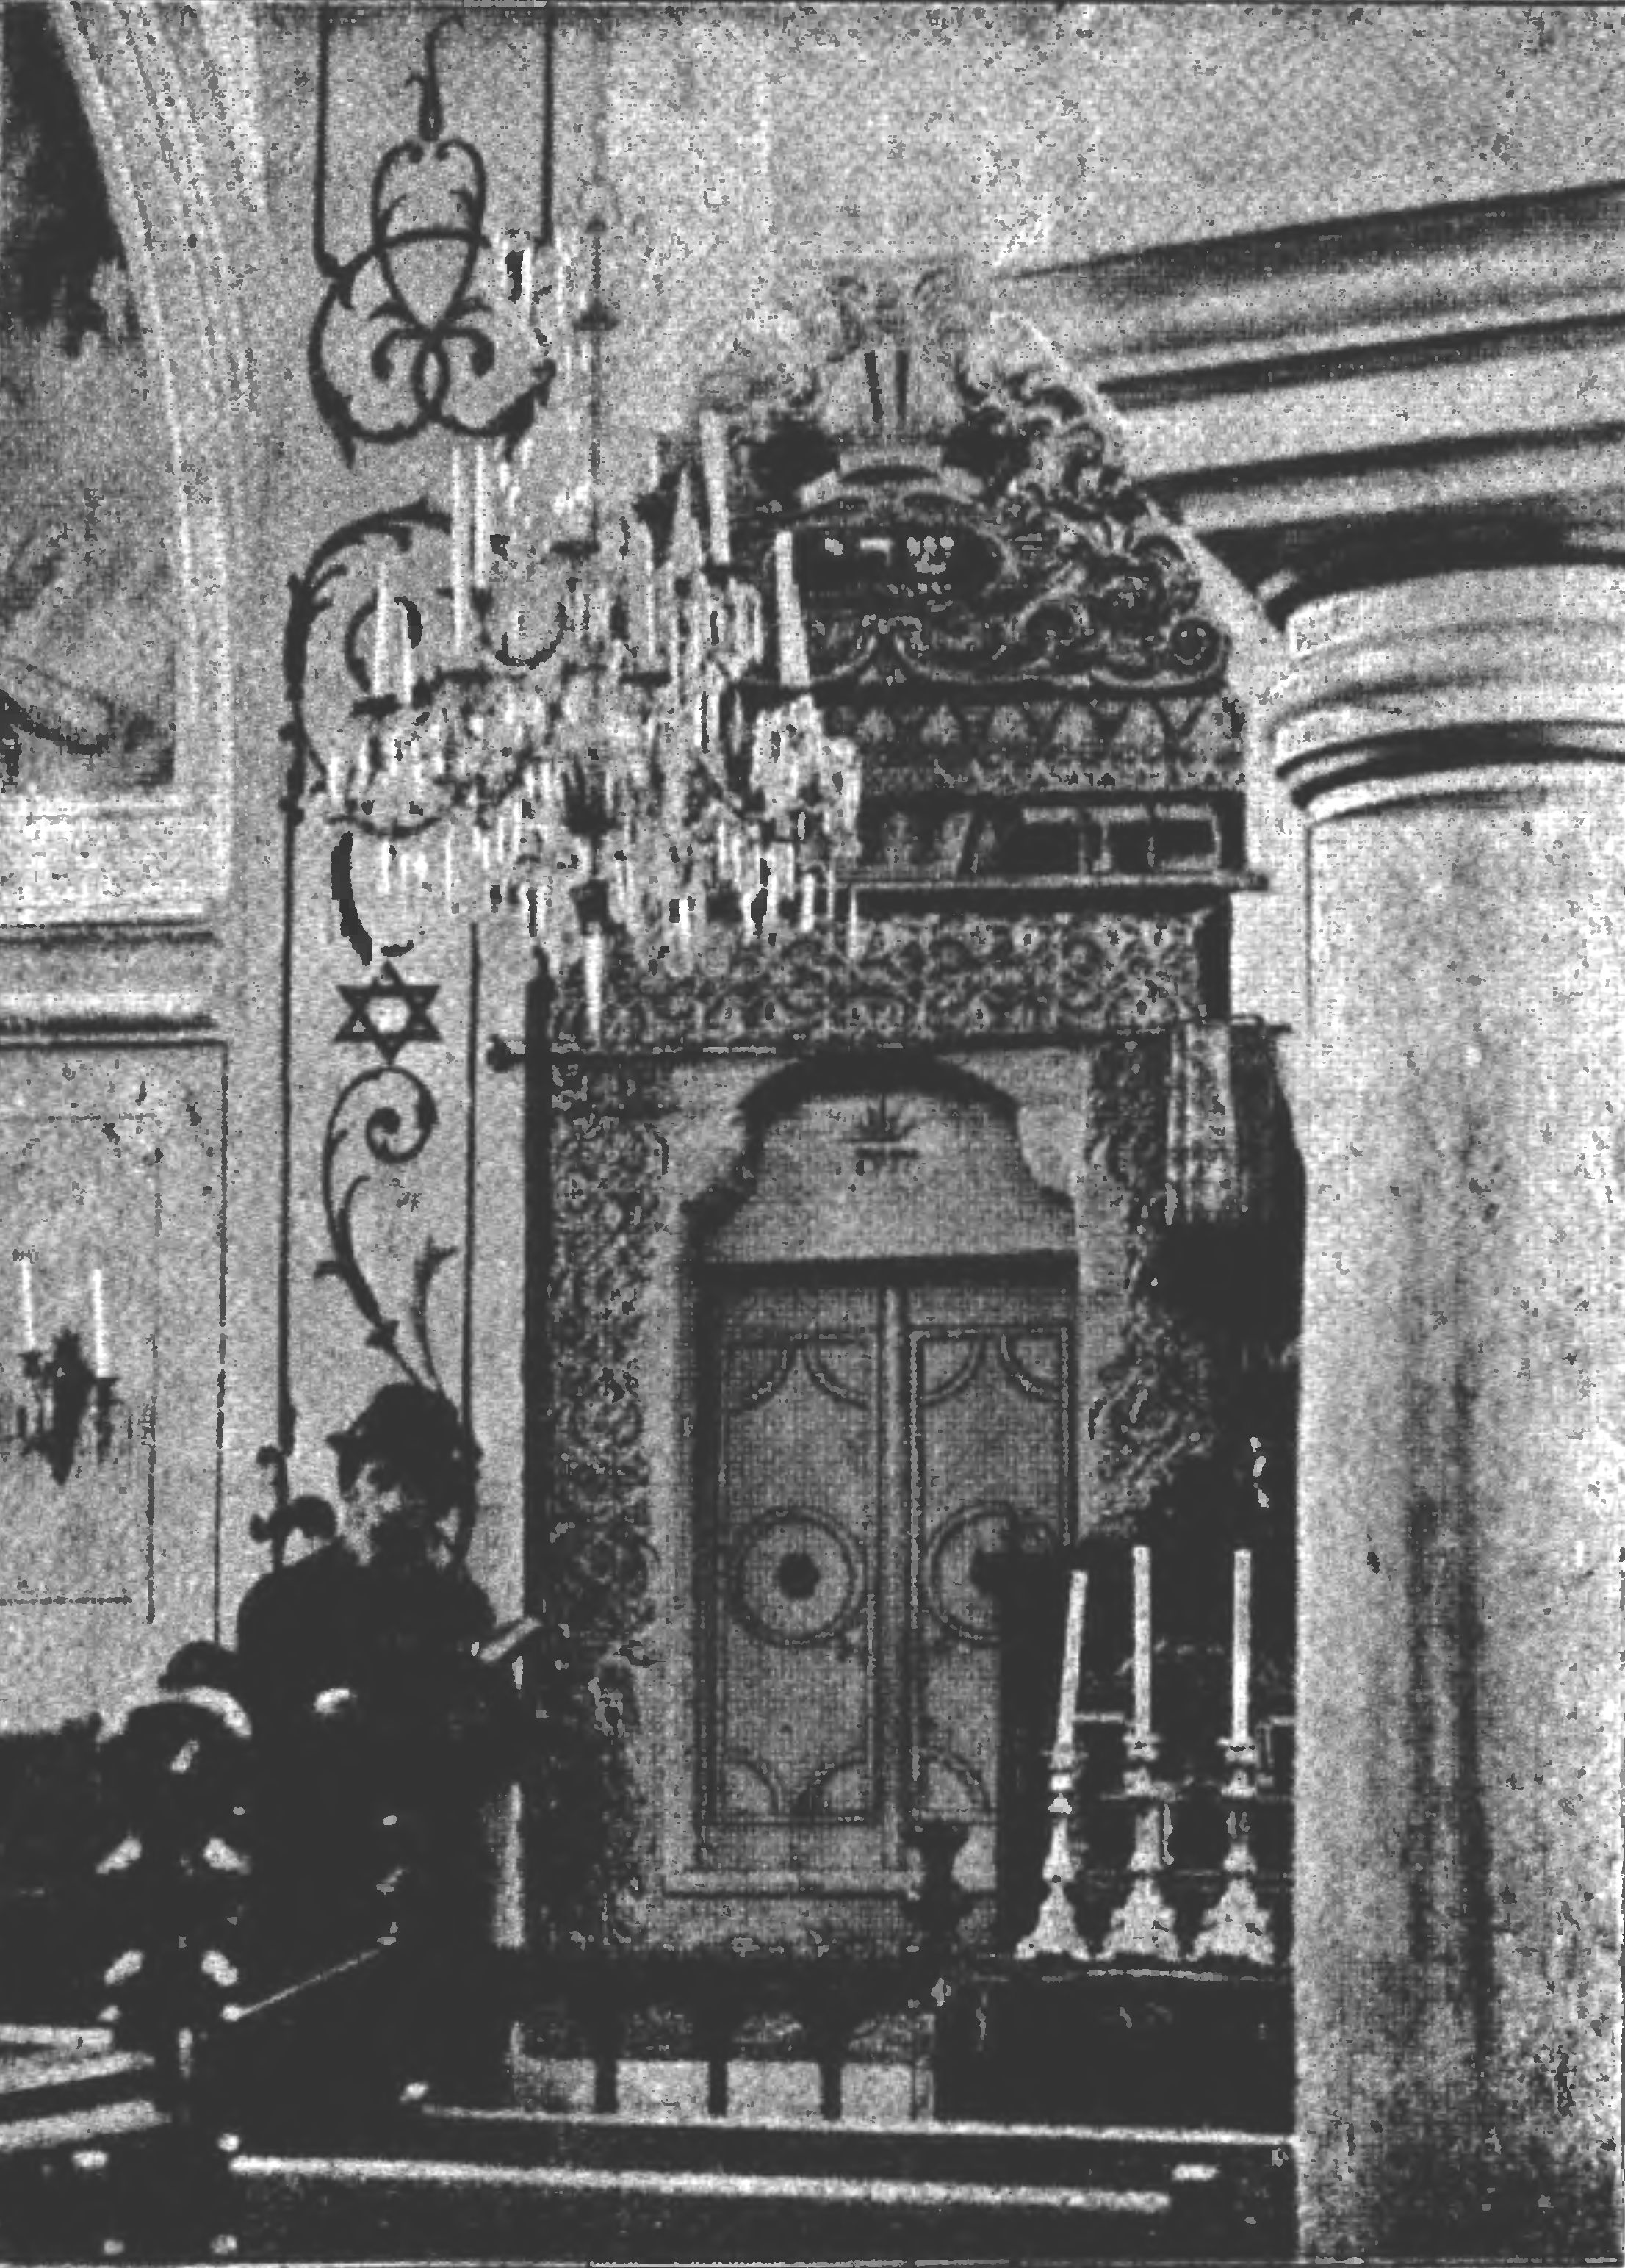  Интерьер каффинской синагоги 1309 года. Особенный интерес вызывает выполненный в сельджукском стиле арон а-кодеш (из книги И. Фарфеля)